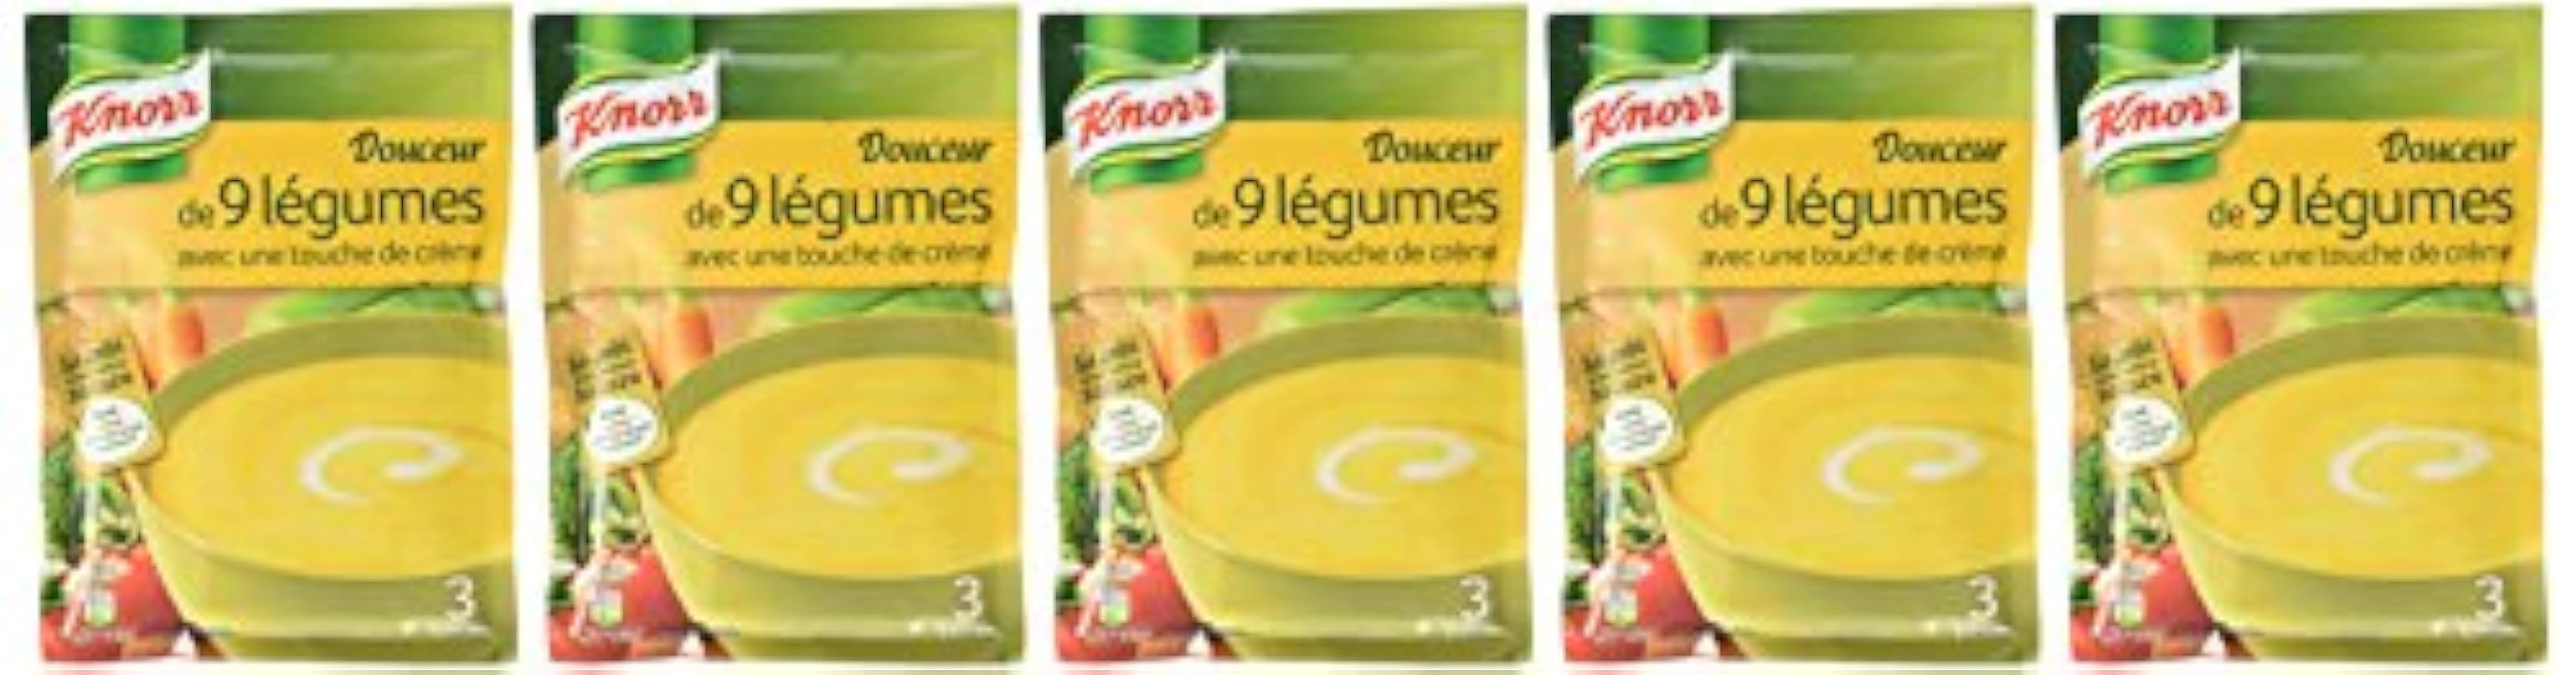 Knorr Douceur de 9 Légumes avec une Touche de Crème pour 3 portions 84 g - Lot de 5 mcGeWuu0